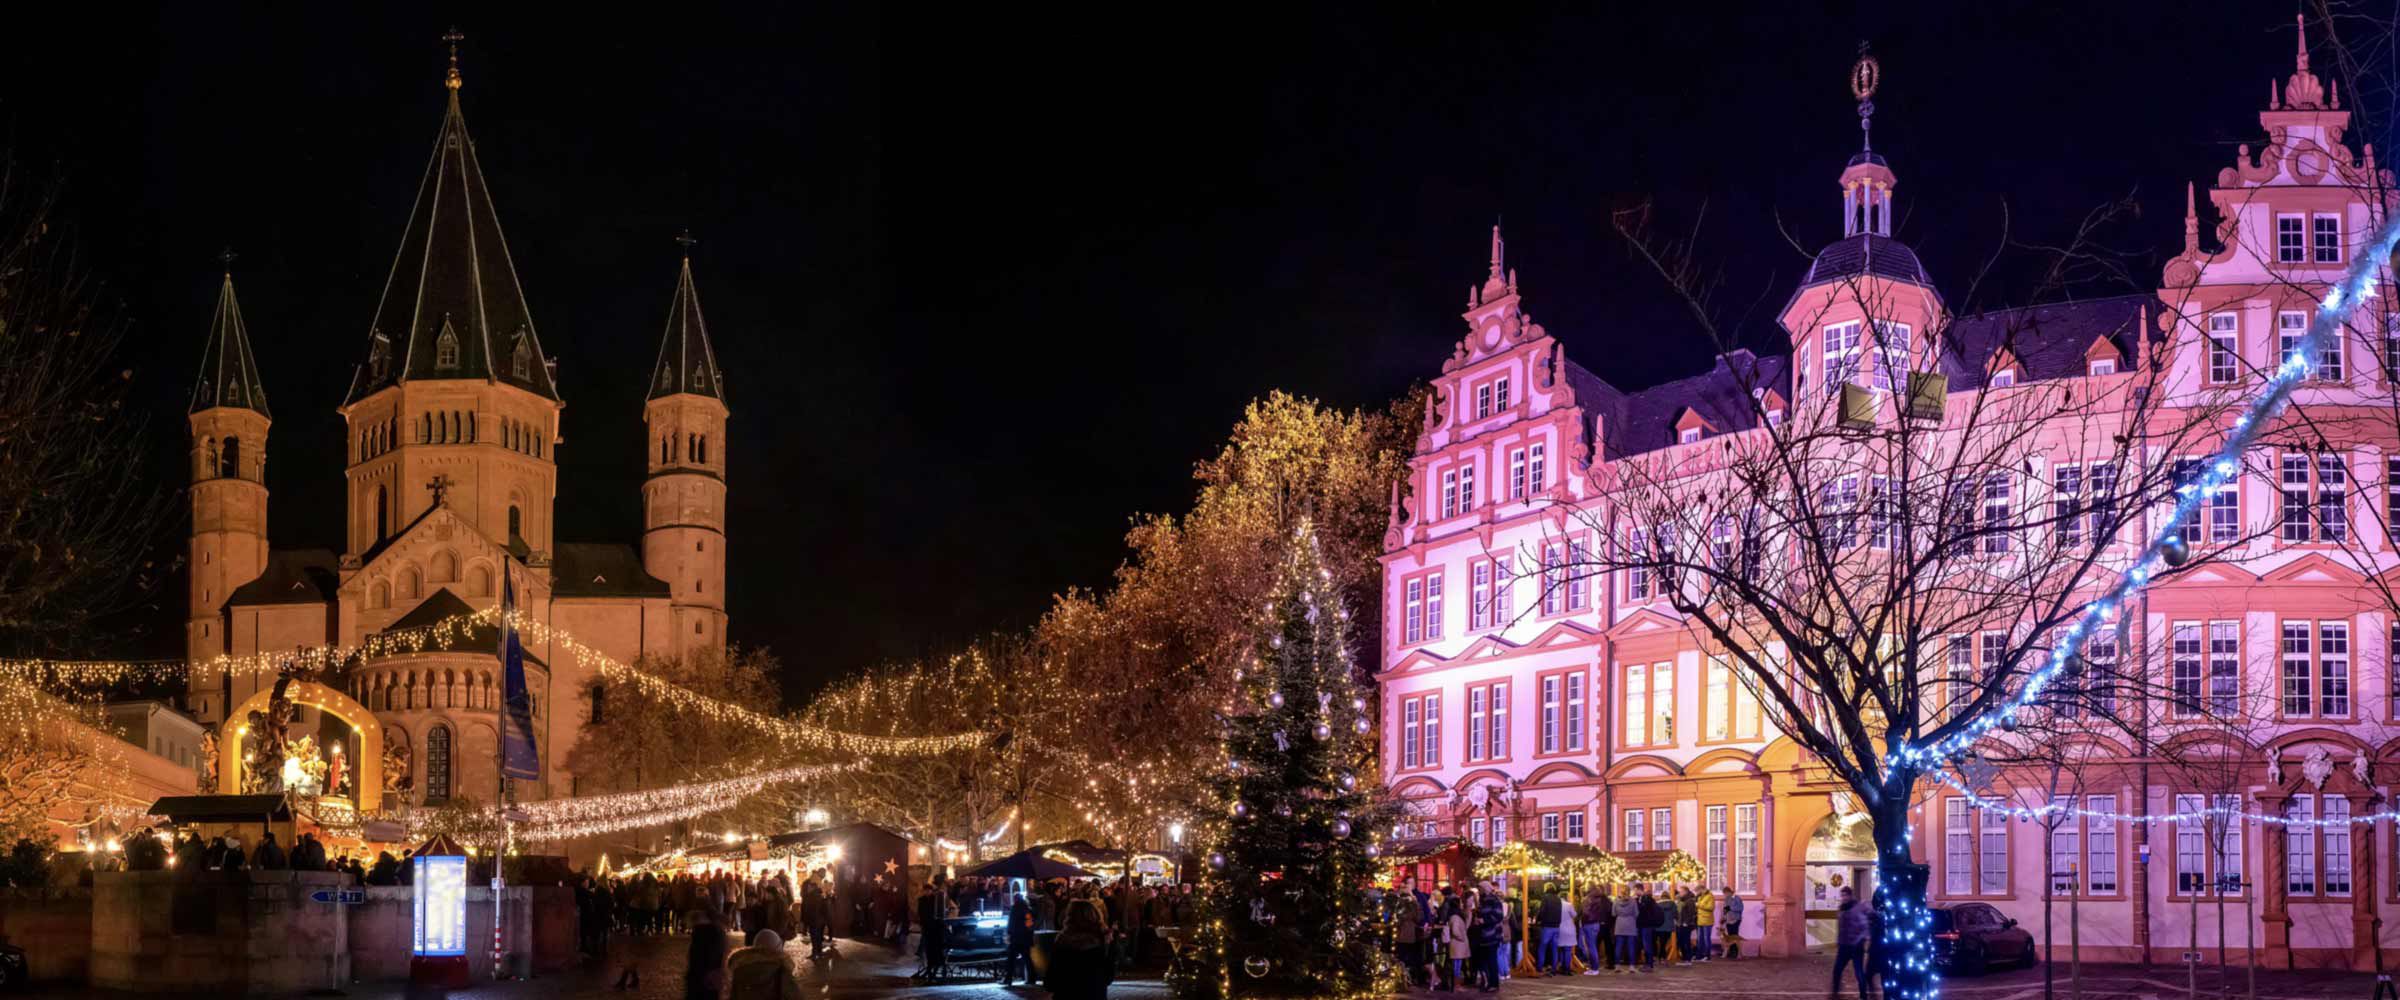 Mainz at Christmas